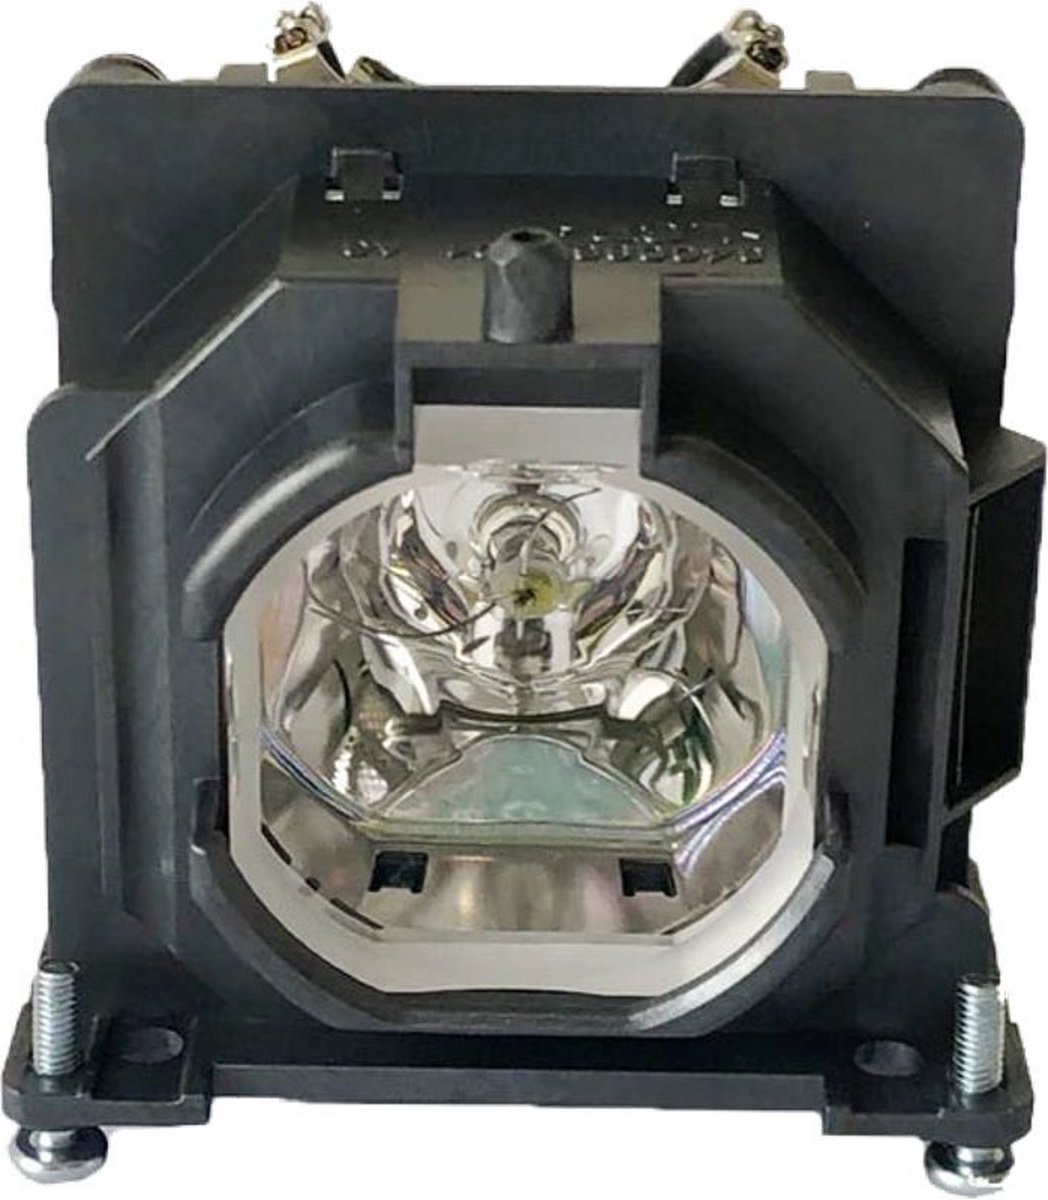 Beamerlamp geschikt voor de PANASONIC PT-LW335U beamer, lamp code ET-LAL510 / ET-LAL510C. Bevat originele UHP lamp, prestaties gelijk aan origineel.